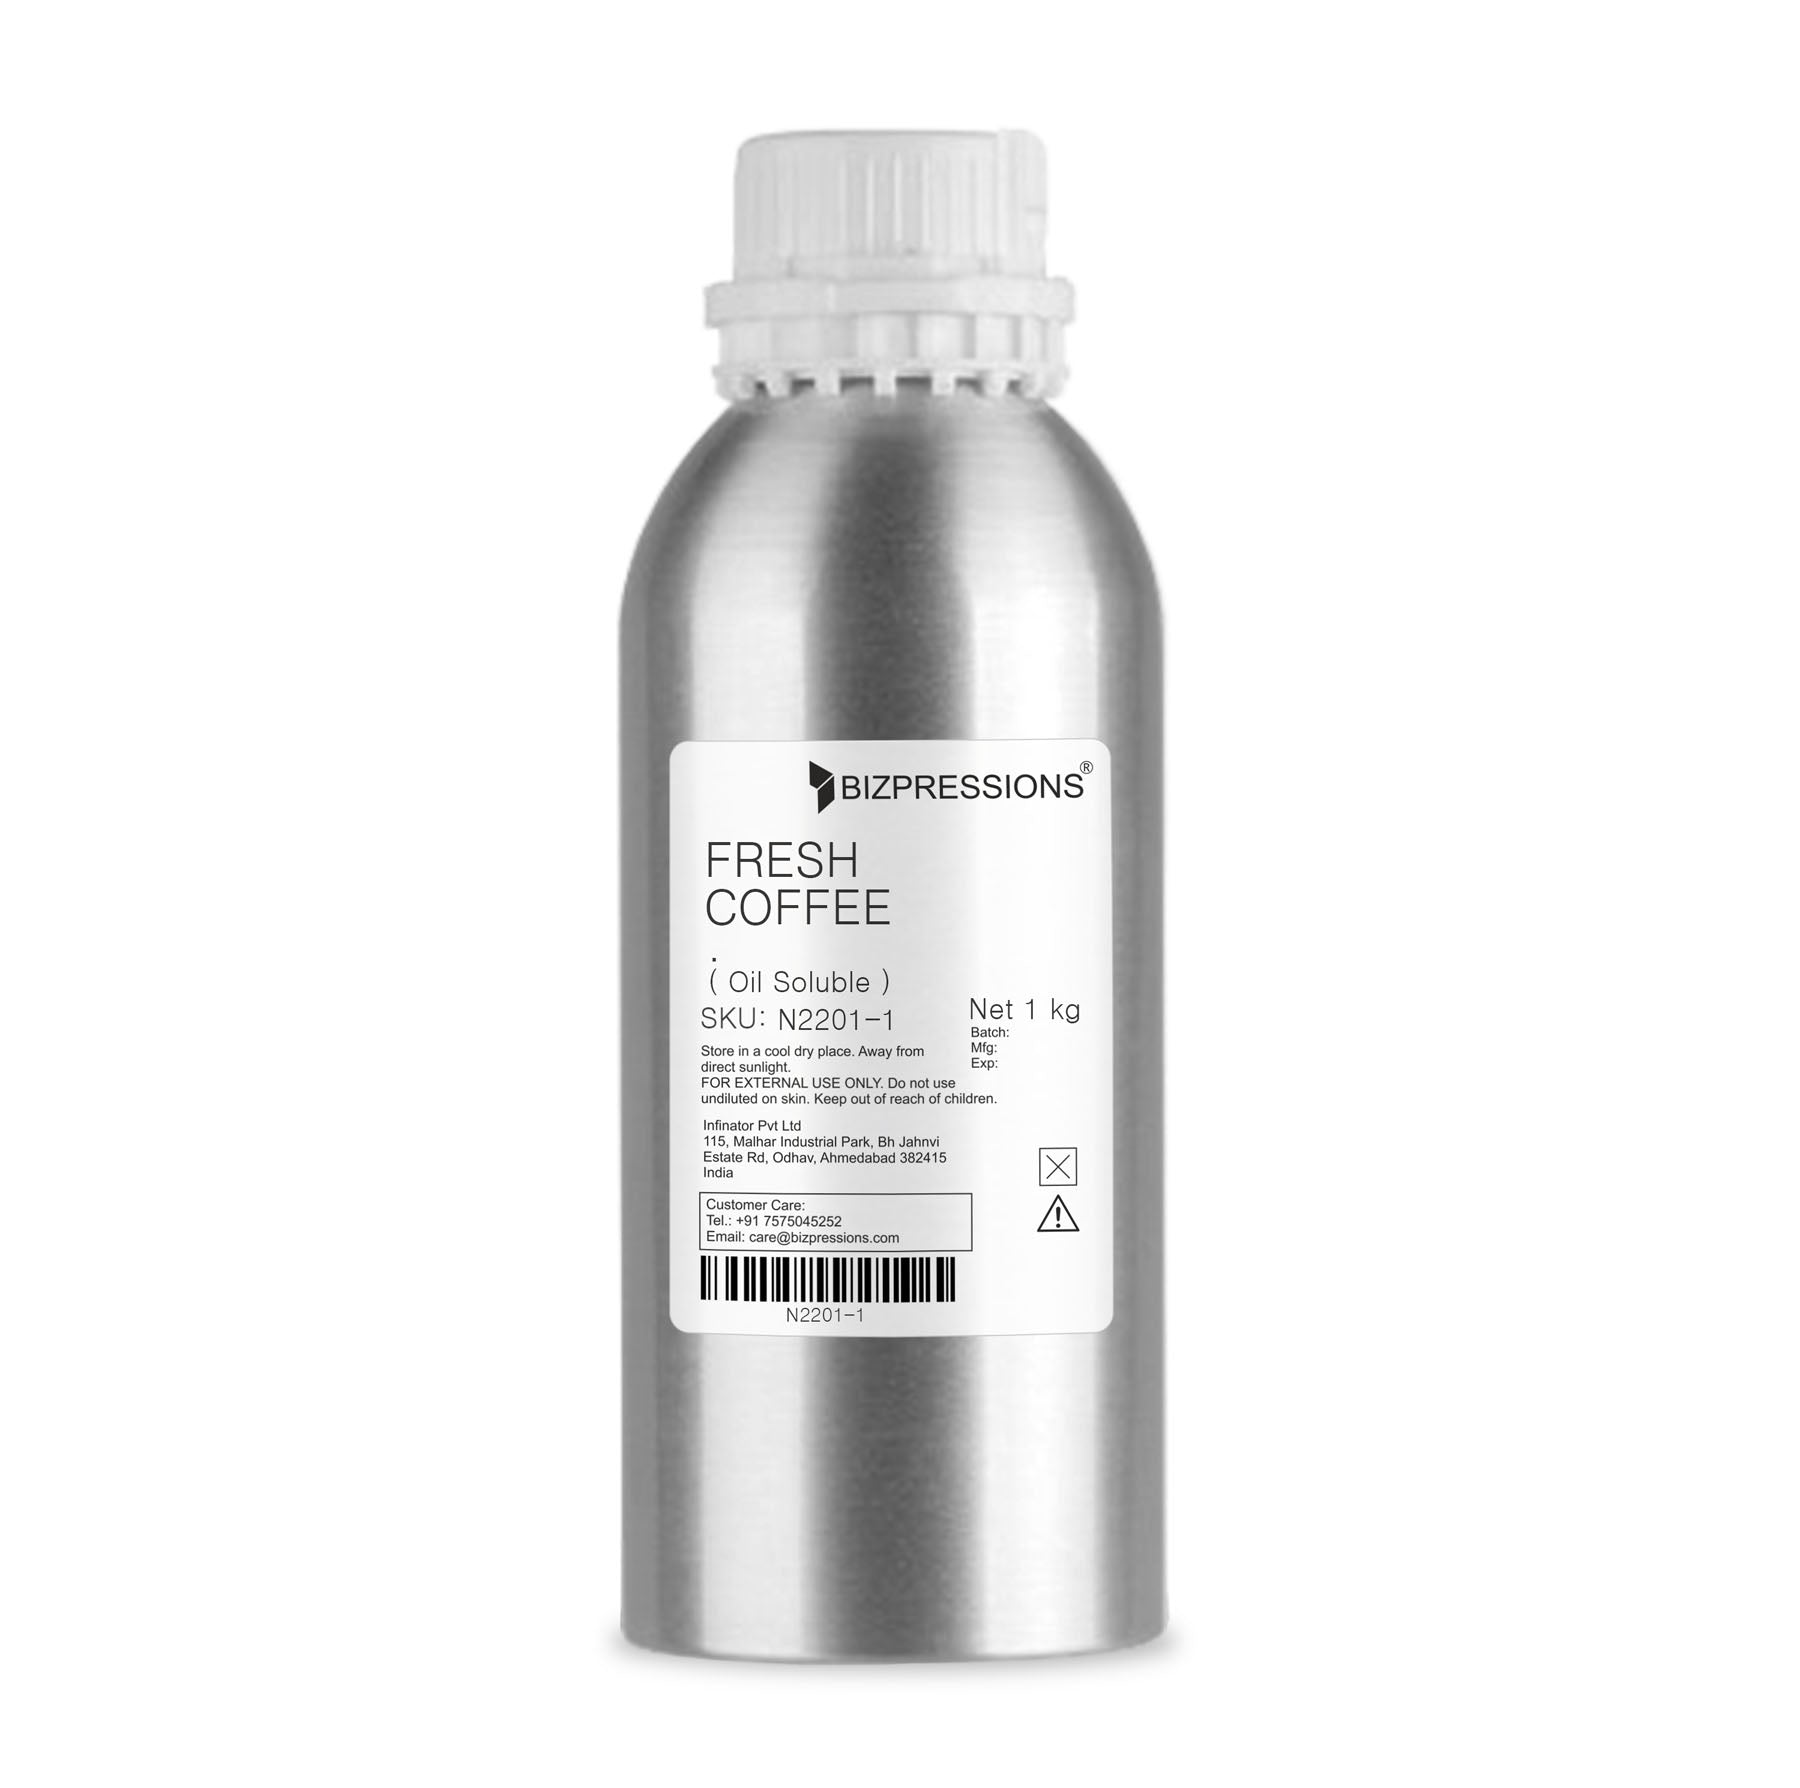 FRESH COFFEE - Fragrance ( Oil Soluble ) - 1 kg